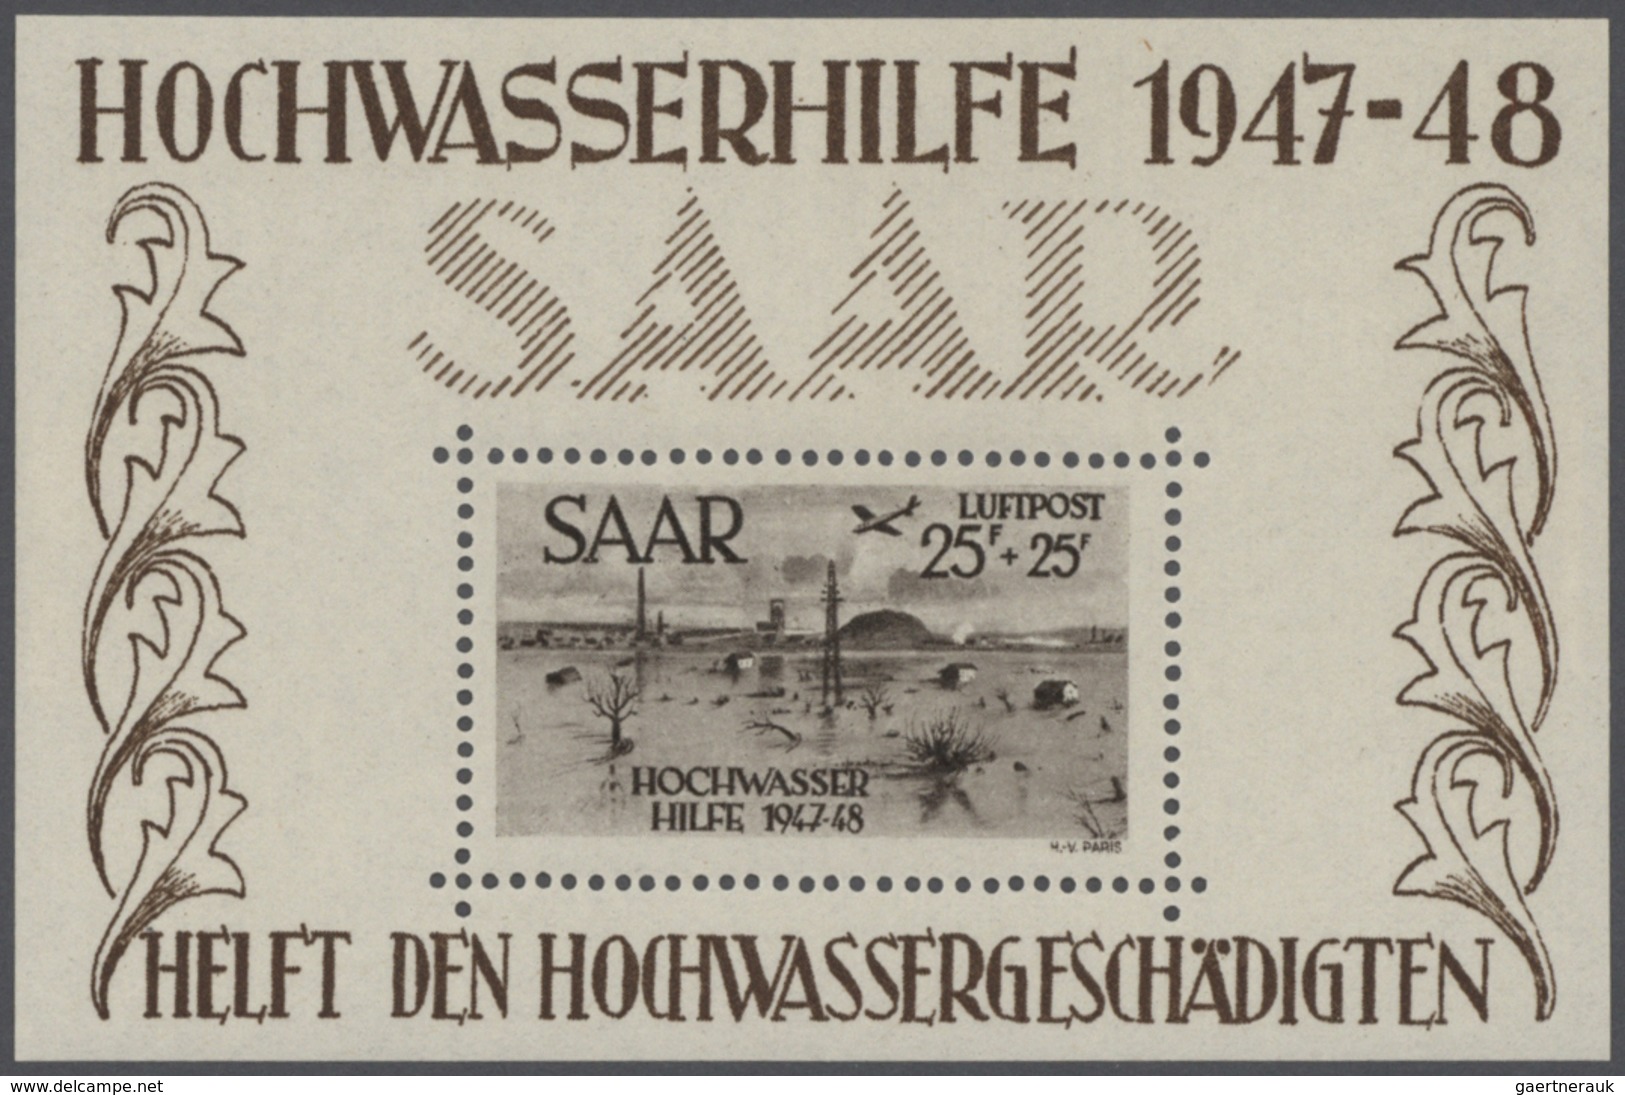 32120 Deutschland nach 1945: 1945/1957, meist bis 1949, urige Sammlung in zwei Lindner-Ringbindern sowie z